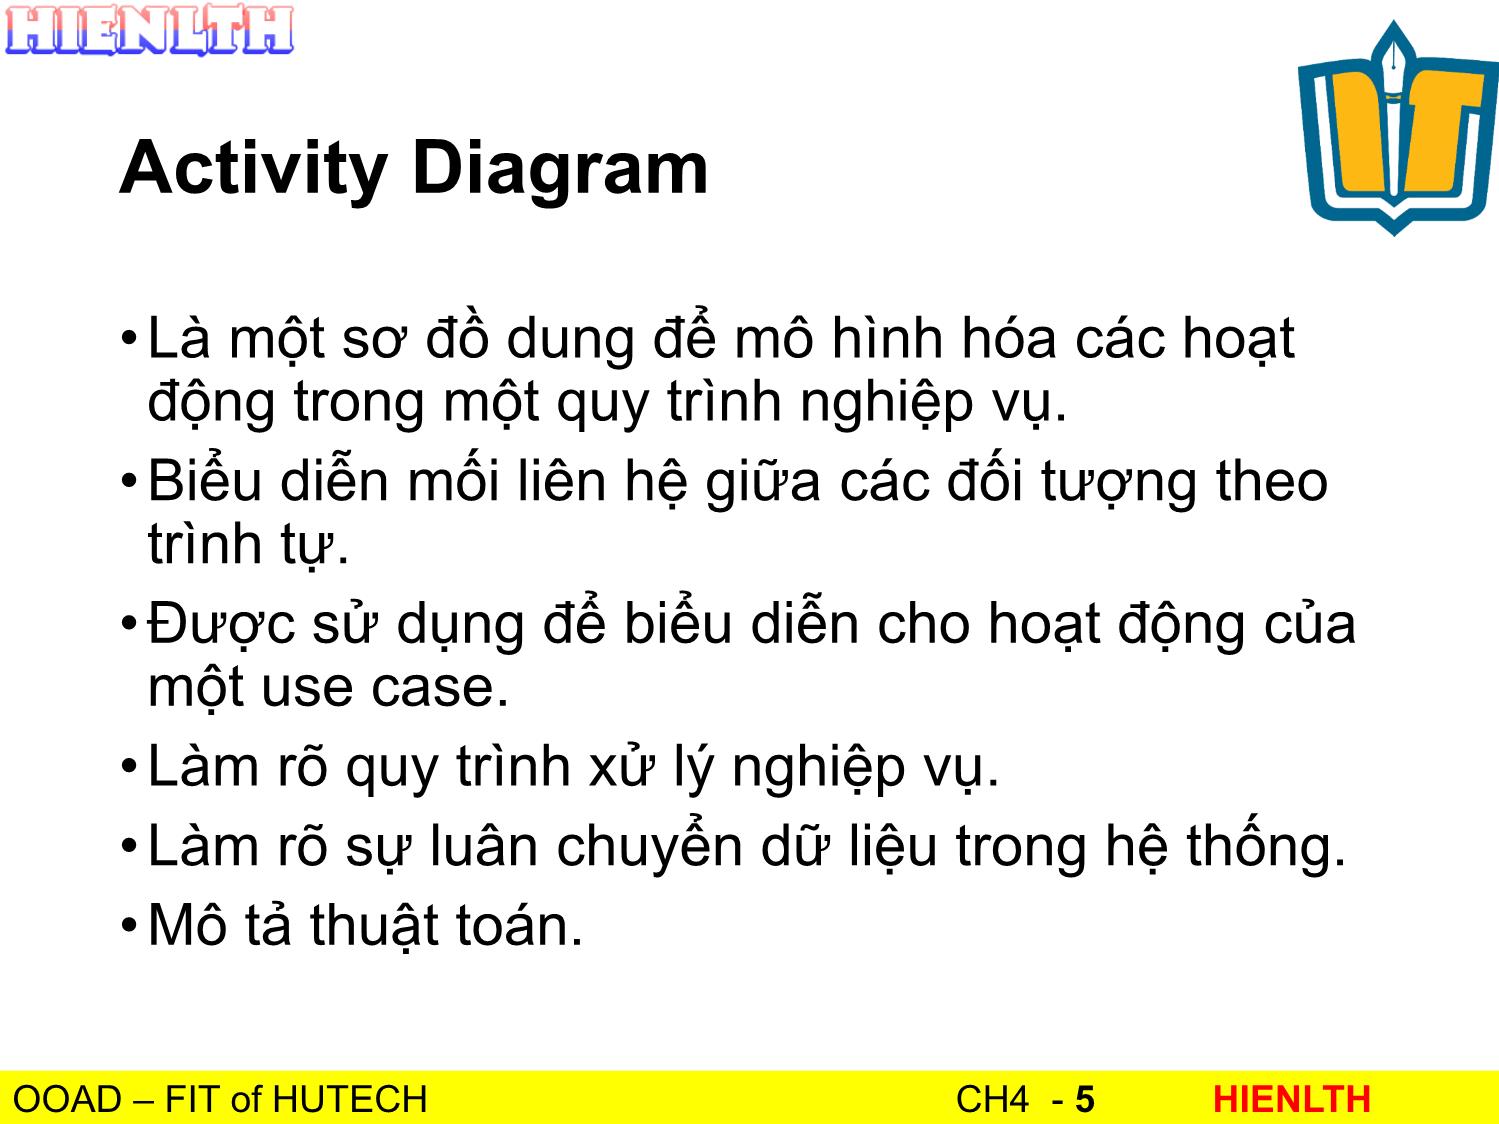 Bài giảng Phân tích thiết kế hướng đối tượng - Bài 4: Activity Diagram - Lương Trần Hy Hiến trang 5